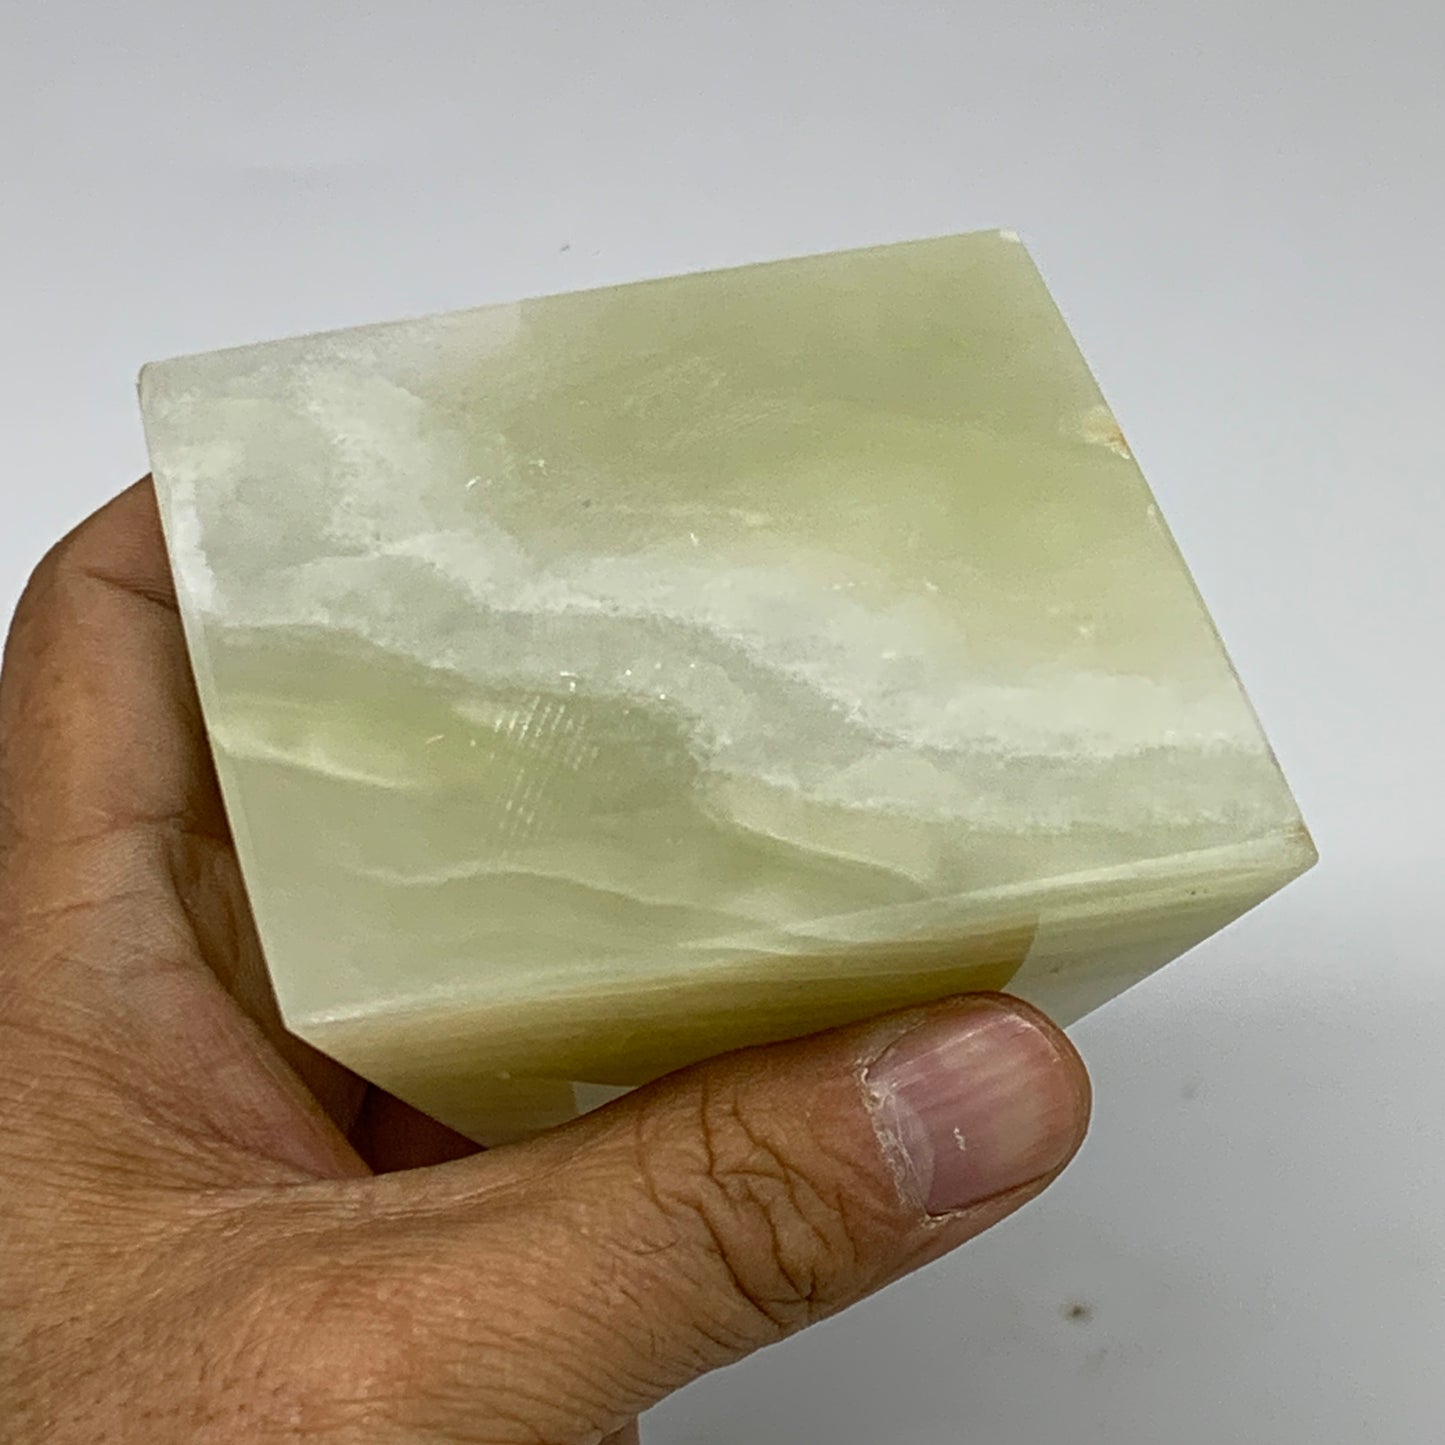 0.93 lbs, 3"x2.9"x2.9", Green Onyx Pyramid Gemstone Crystal, B32464